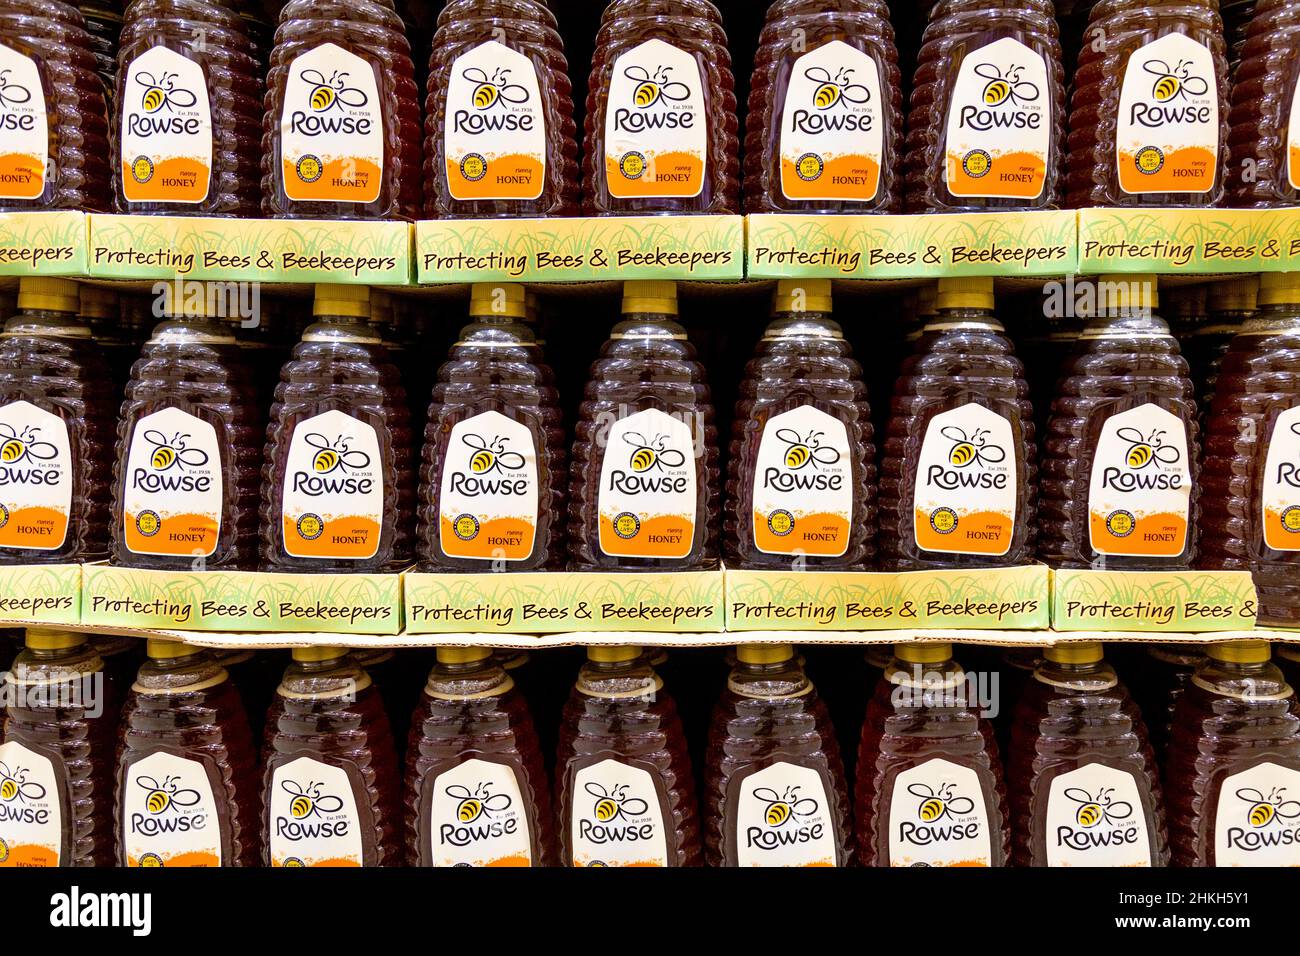 Bottiglie di miele runny Rowse in un supermercato Foto Stock